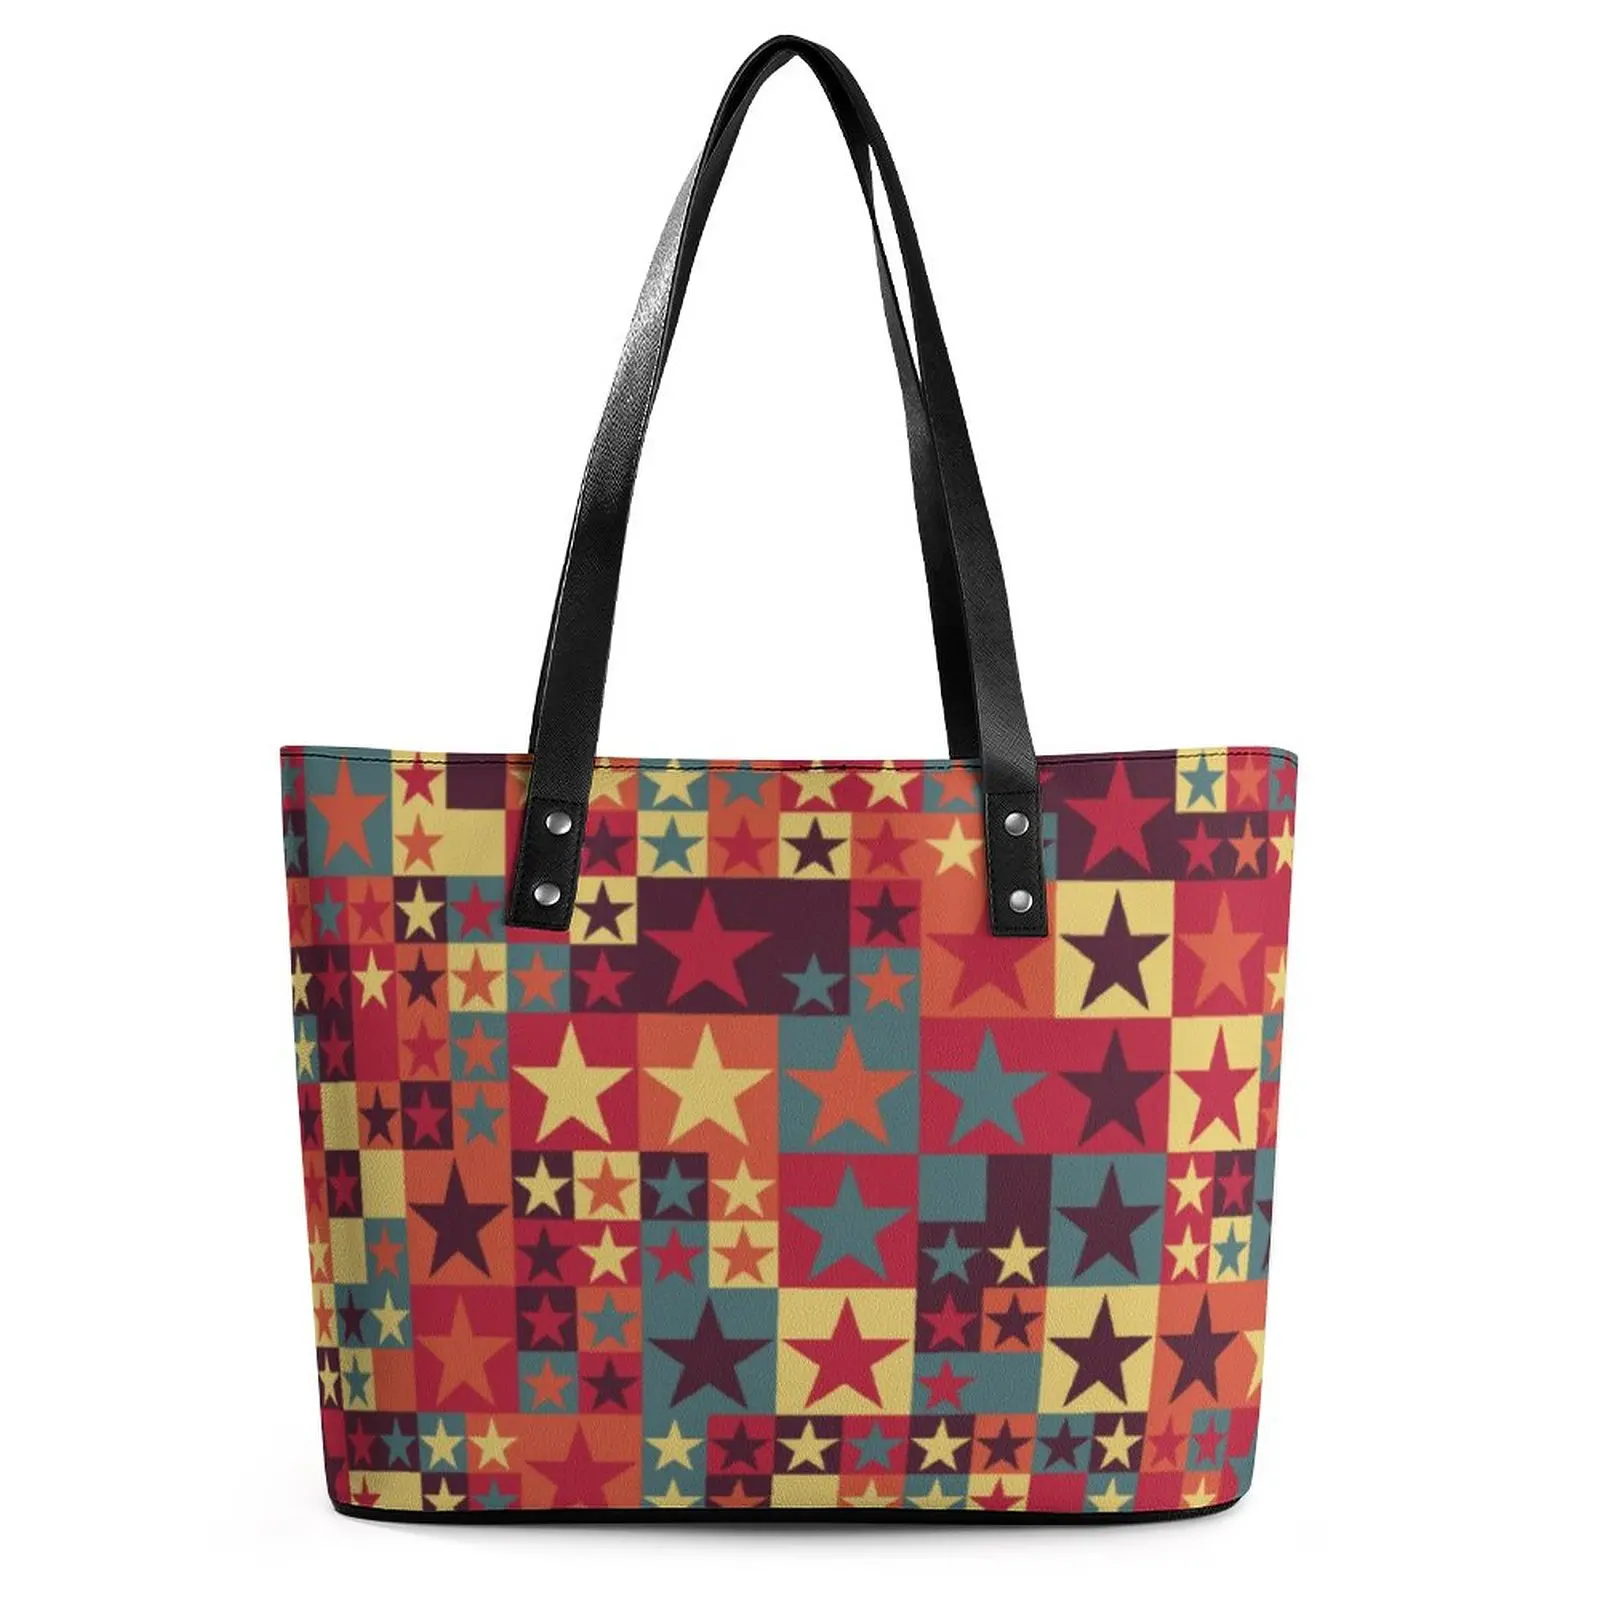 

Красочная женская сумка-тоут с оригинальным дизайном для путешествий, Необычные пляжные сумки с застежкой-молнией